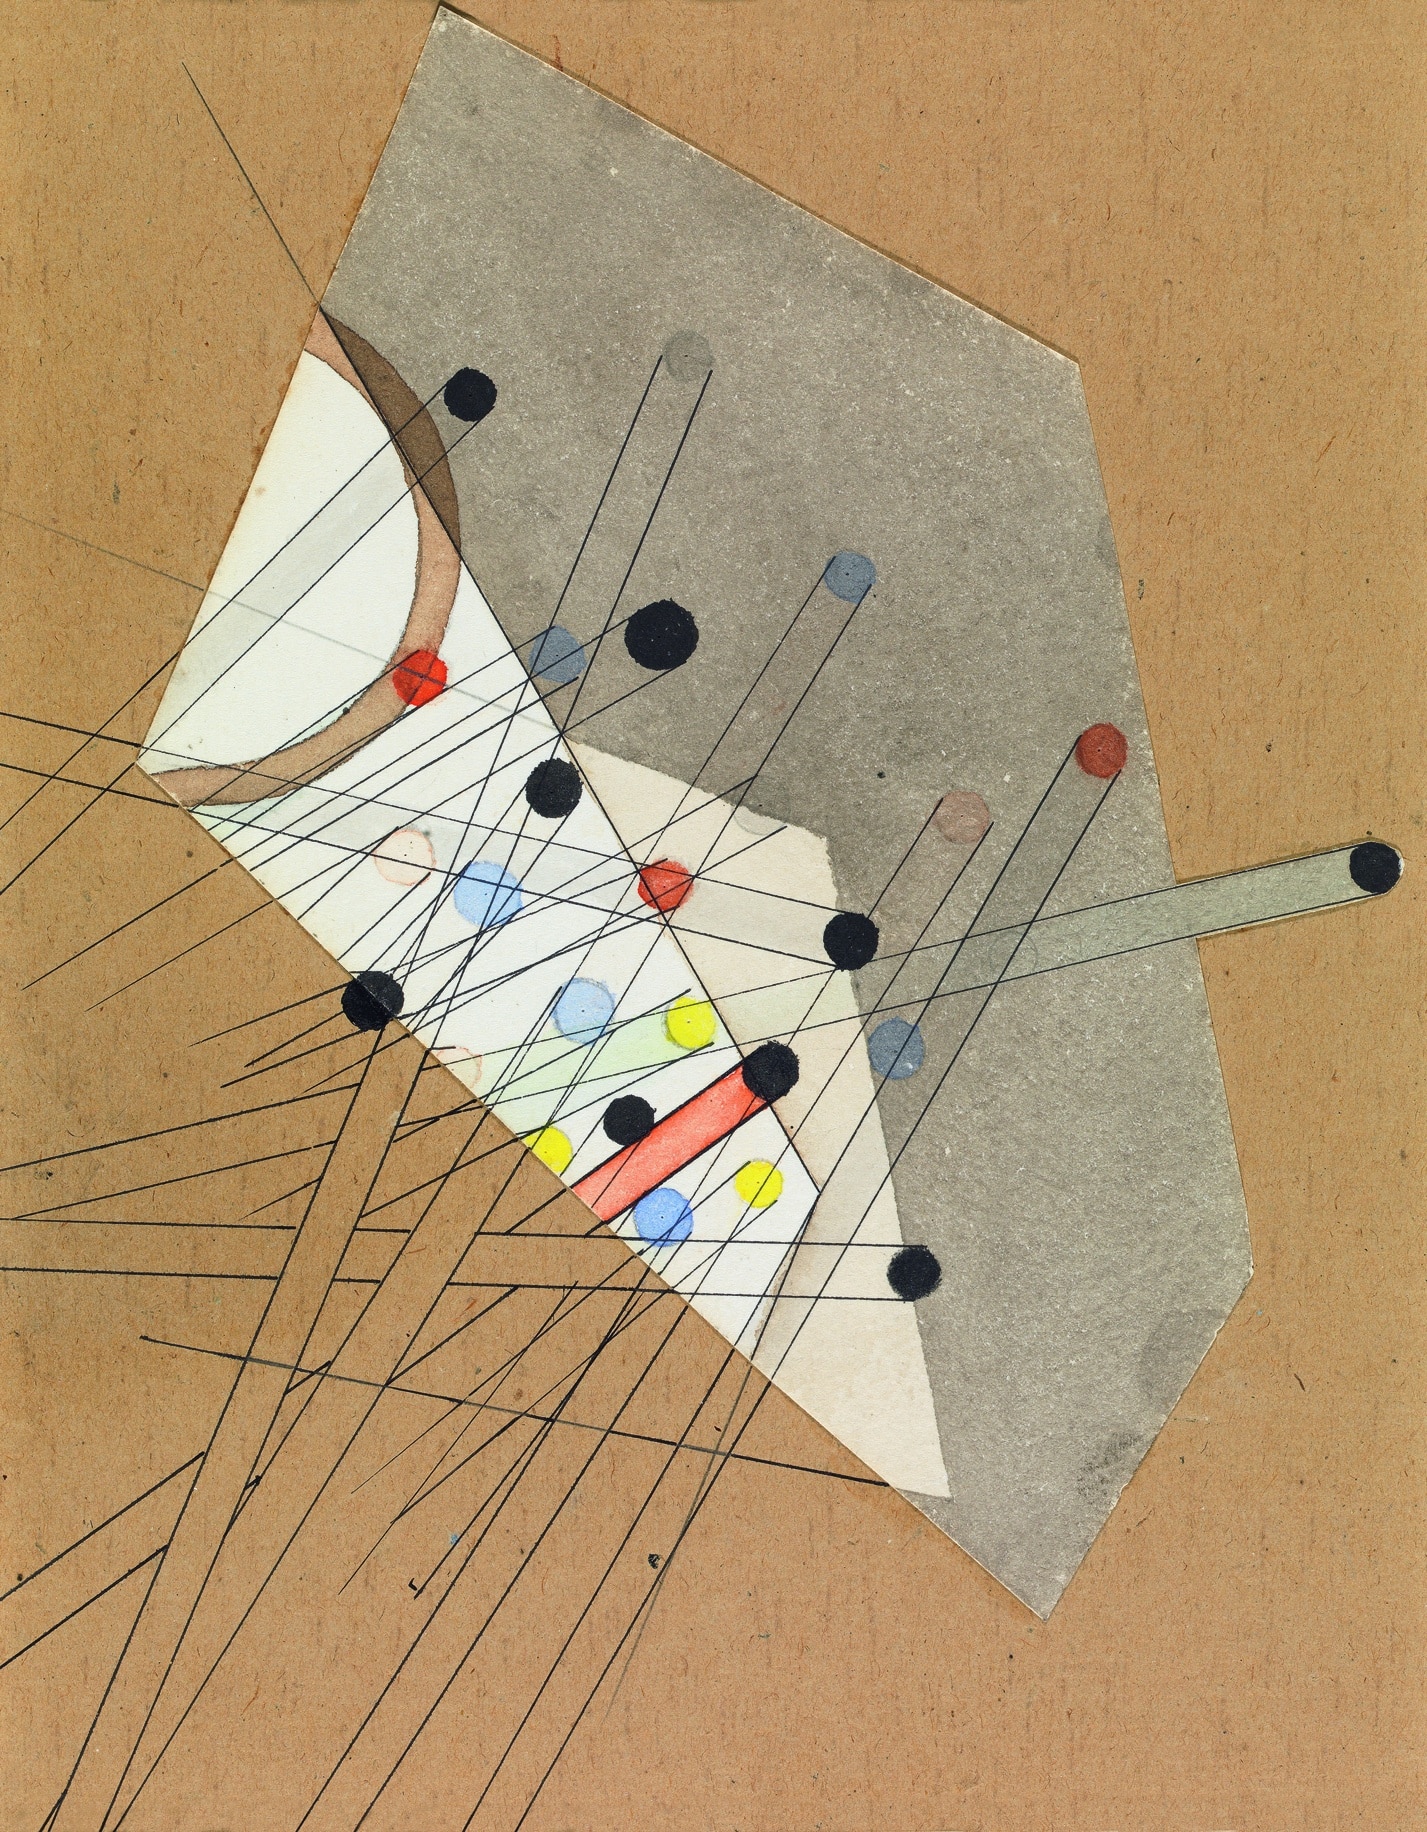 Composition © László Moholy-Nagy. VEGAP, Madrid, 2022